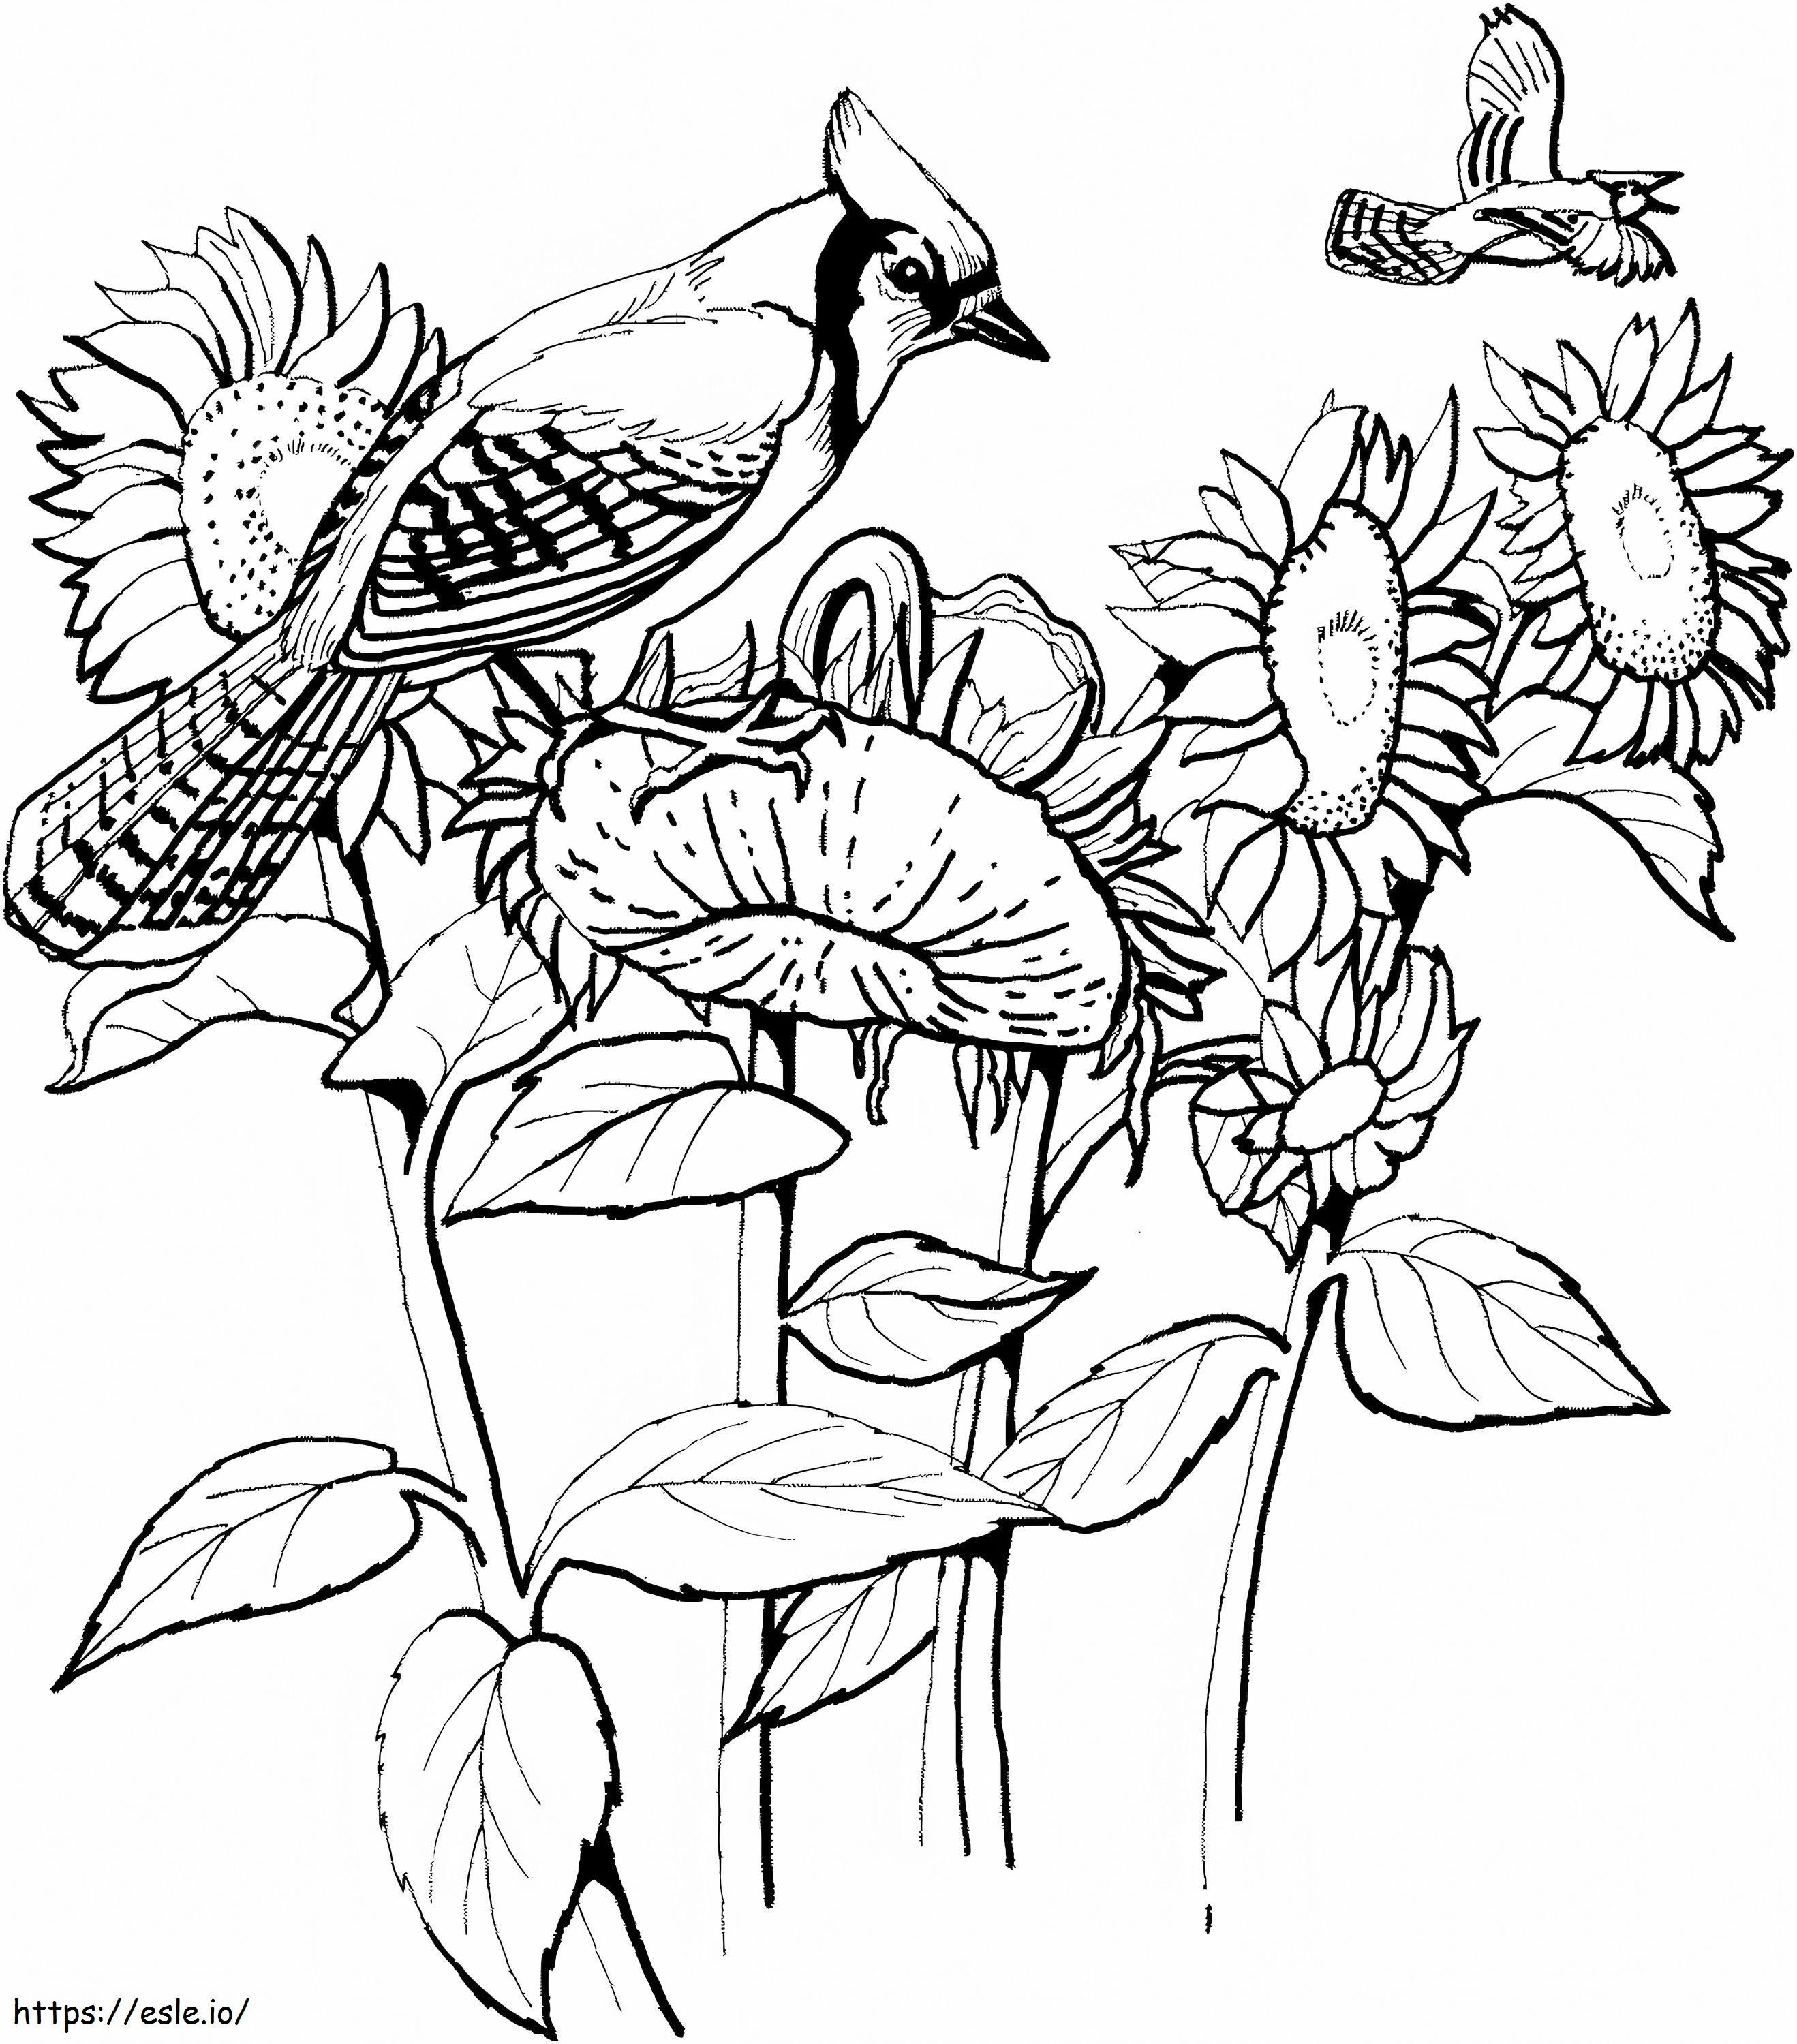 Vögel und Sonnenblumen ausmalbilder